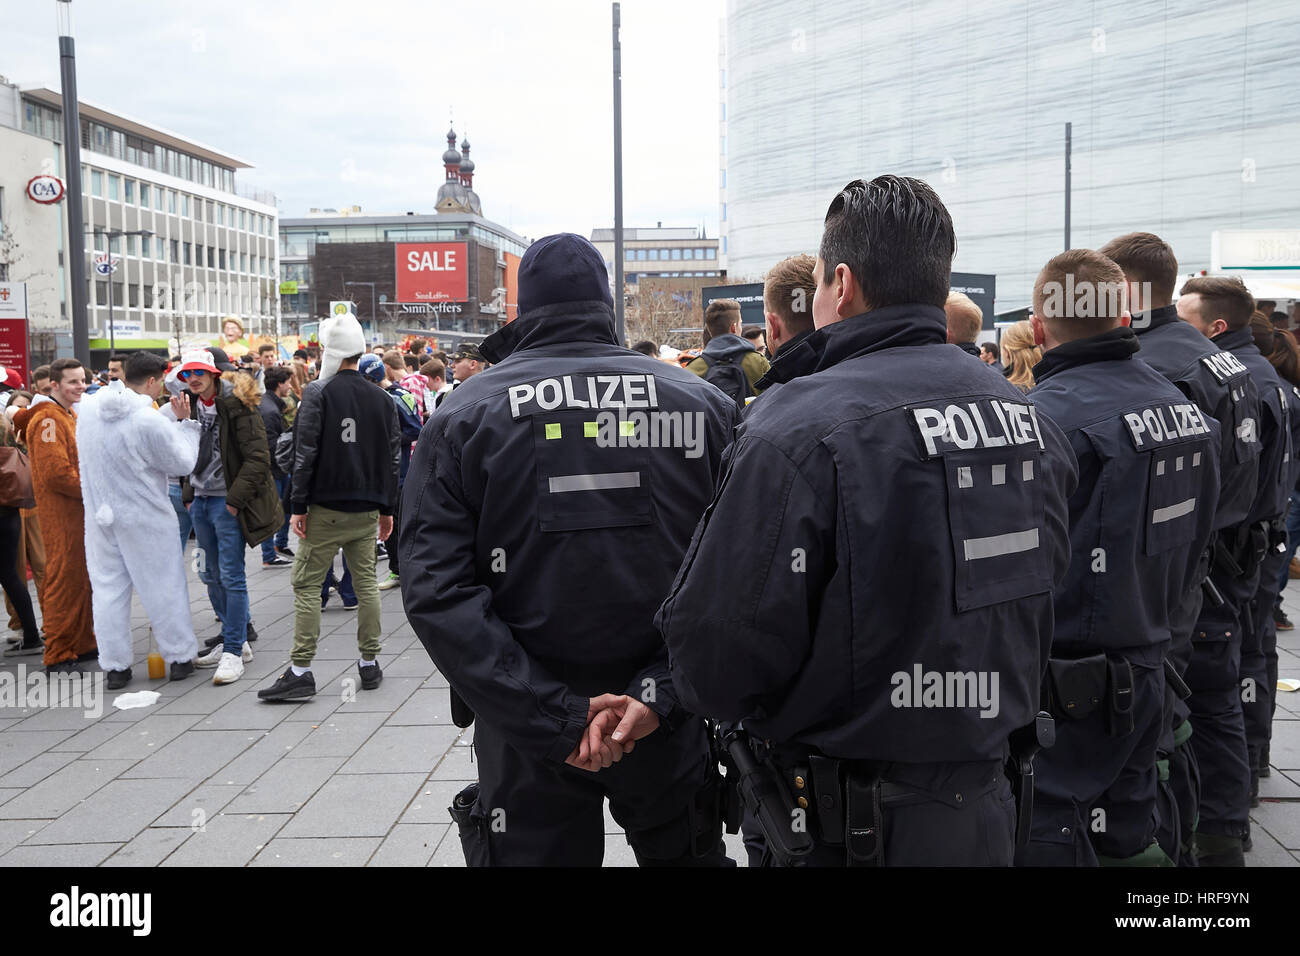 Les agents de police pour la sécurité, parade Rosenmontag Coblence, Coblence, Rhénanie-Palatinat, Allemagne Banque D'Images